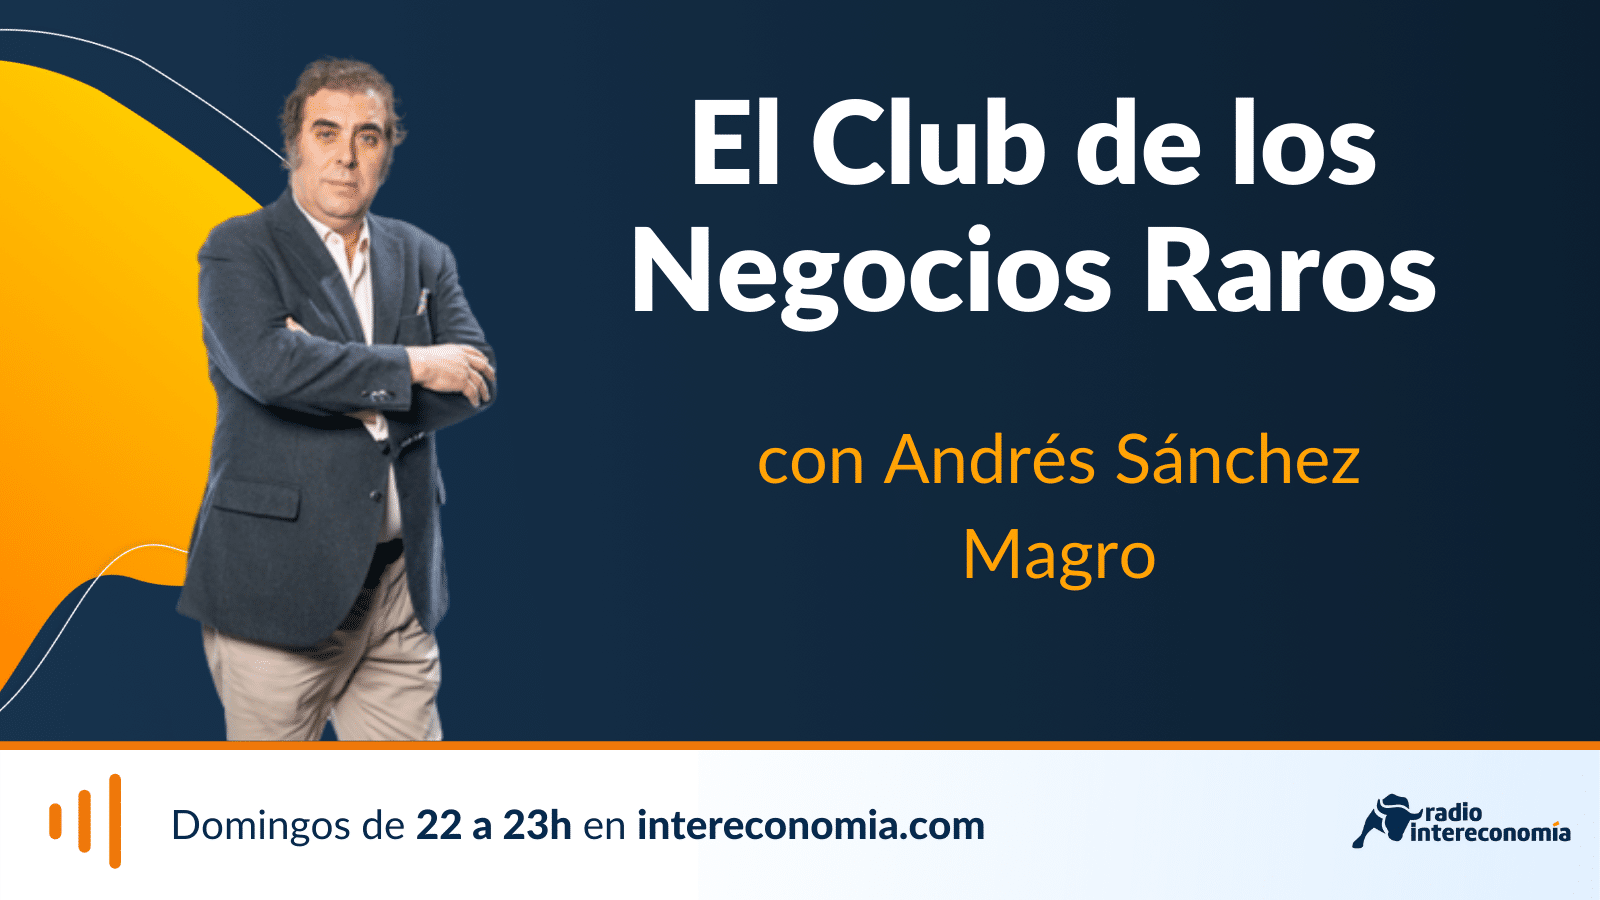 El Club de los Negocios Raros, el signo de los diez, José Carlos Somoza 03/07/2022